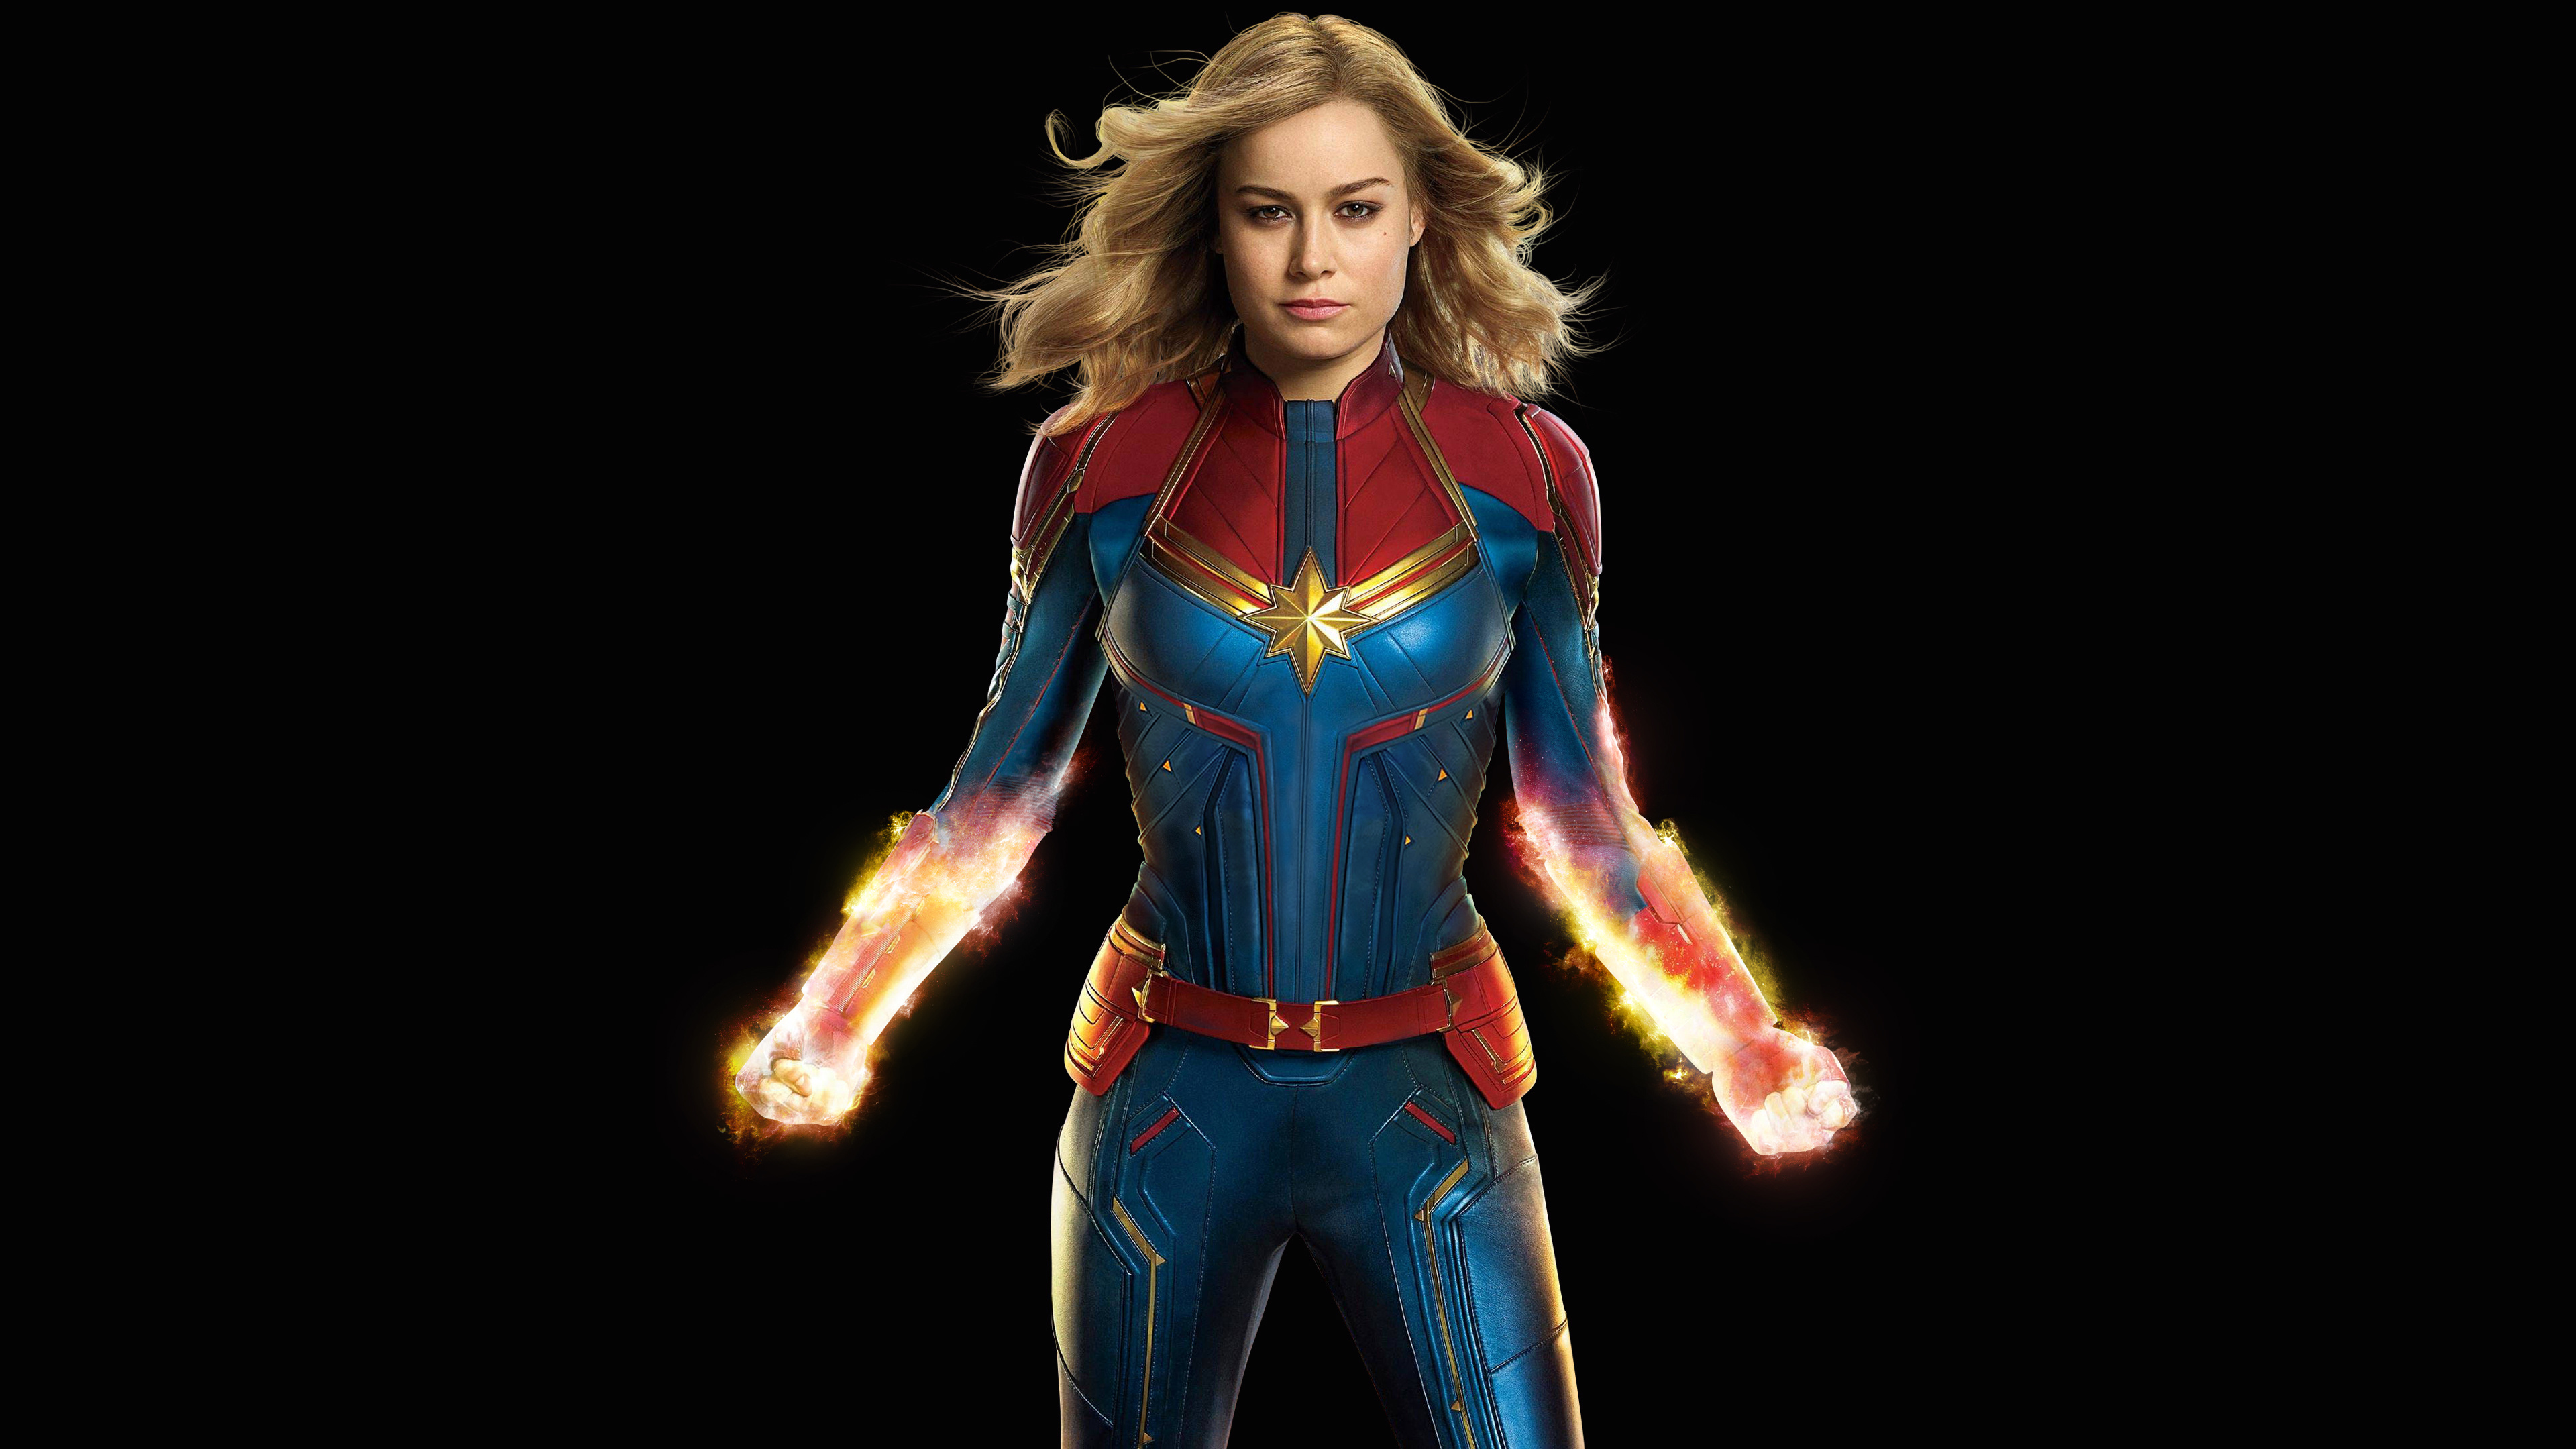 Brie Larson As Carol Danverscaptain Marvel In Avenger 